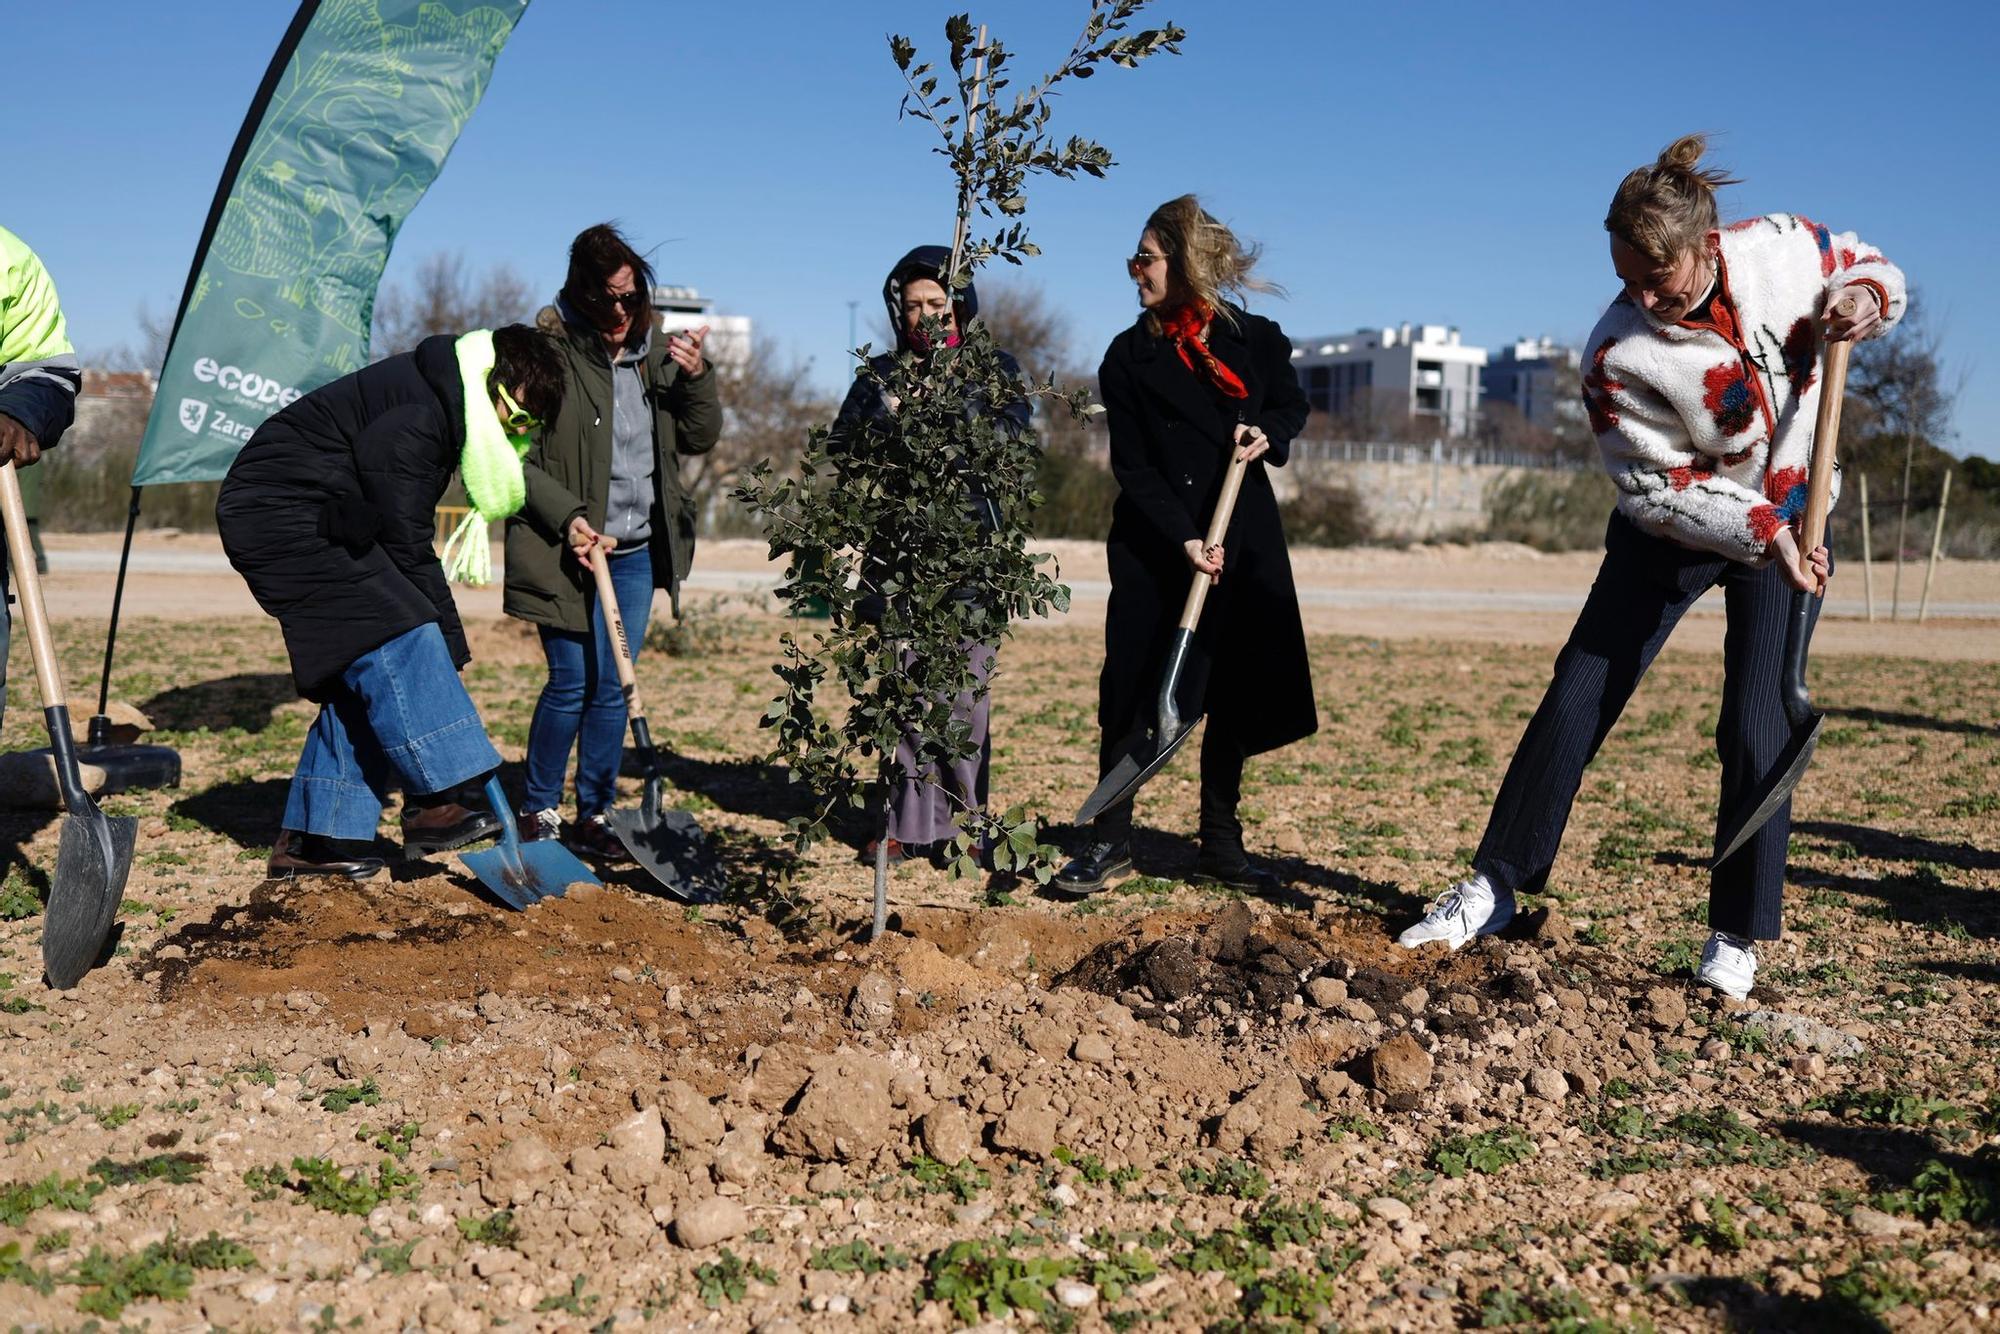 Protagonistas de los Feroz plantan árboles en el Bosque de los Zaragozanos